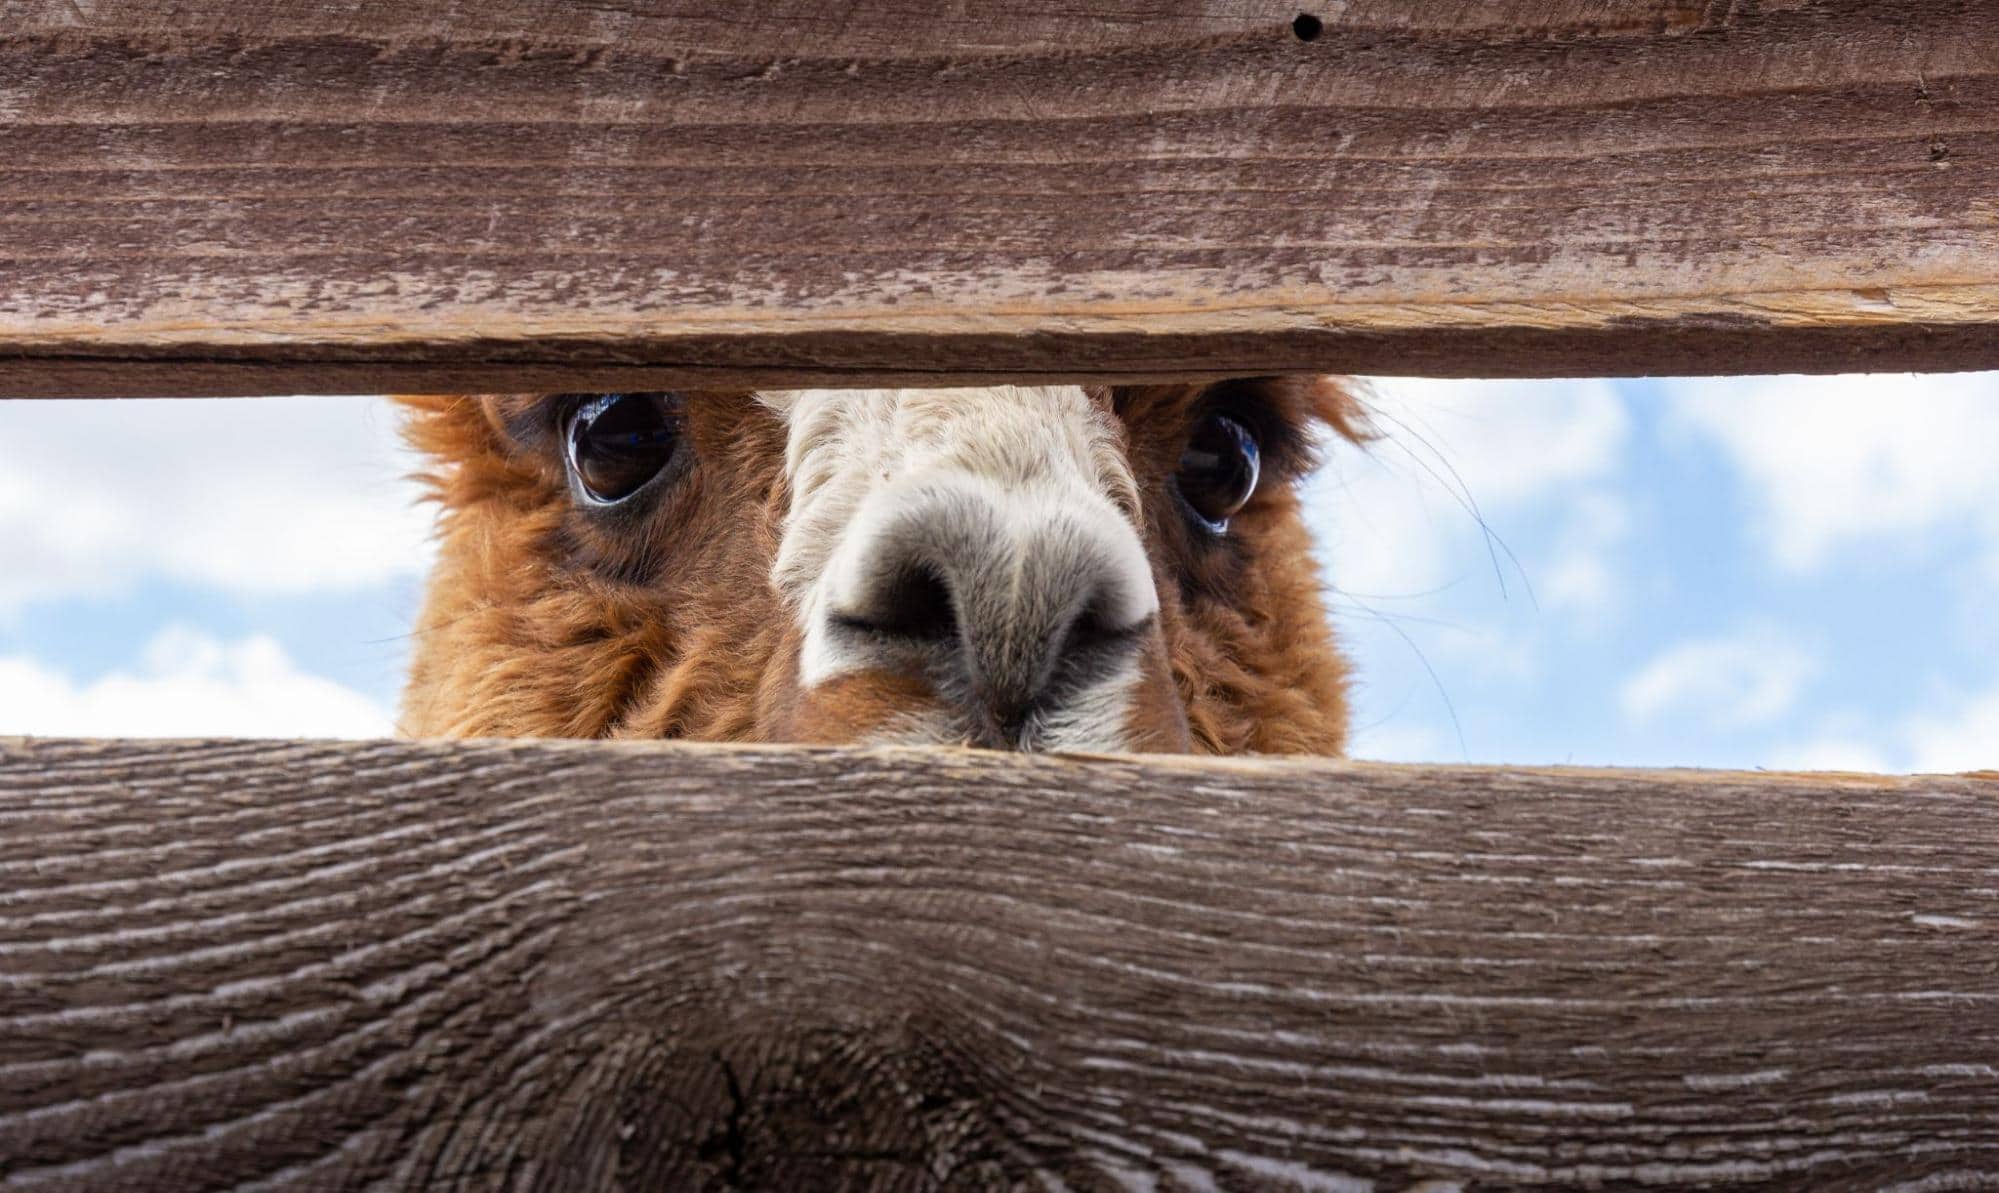 Spying llama peeking through fence